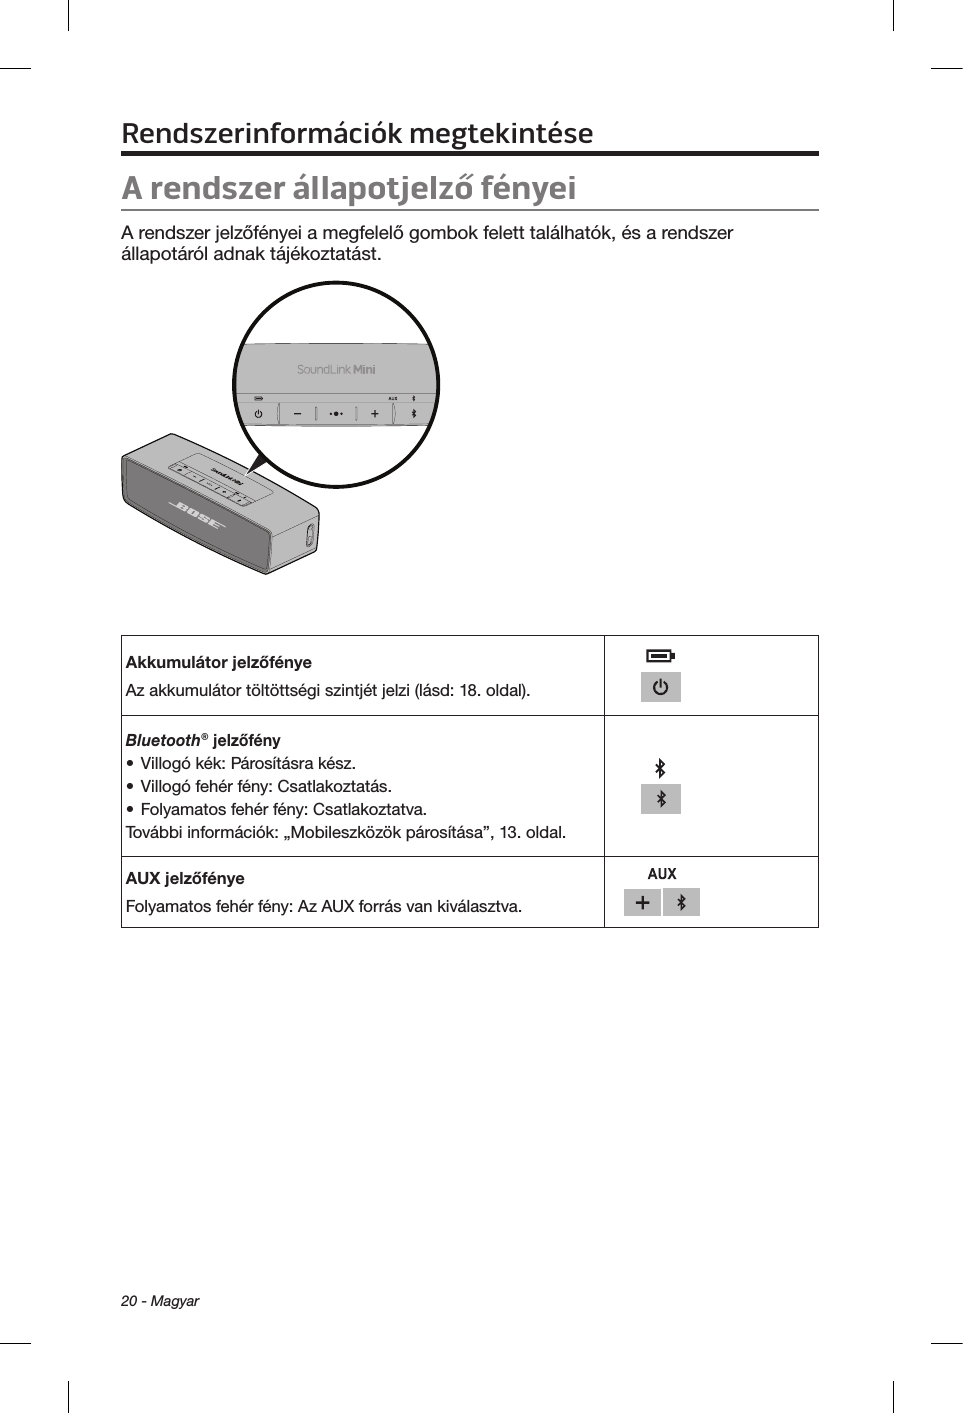 20 - MagyarRendszerinformációk megtekintéseA rendszer állapotjelző fényeiA rendszer jelzőfényei a megfelelő gombok felett találhatók, és a rendszer állapotáról adnak tájékoztatást.Akkumulátor jelzőfényeAz akkumulátor töltöttségi szintjét jelzi (lásd: 18. oldal).Bluetooth® jelzőfény• Villogó kék: Párosításra kész.• Villogó fehér fény: Csatlakoztatás.• Folyamatos fehér fény: Csatlakoztatva.További információk: „Mobileszközök párosítása”, 13. oldal.AUX jelzőfényeFolyamatos fehér fény: Az AUX forrás van kiválasztva.